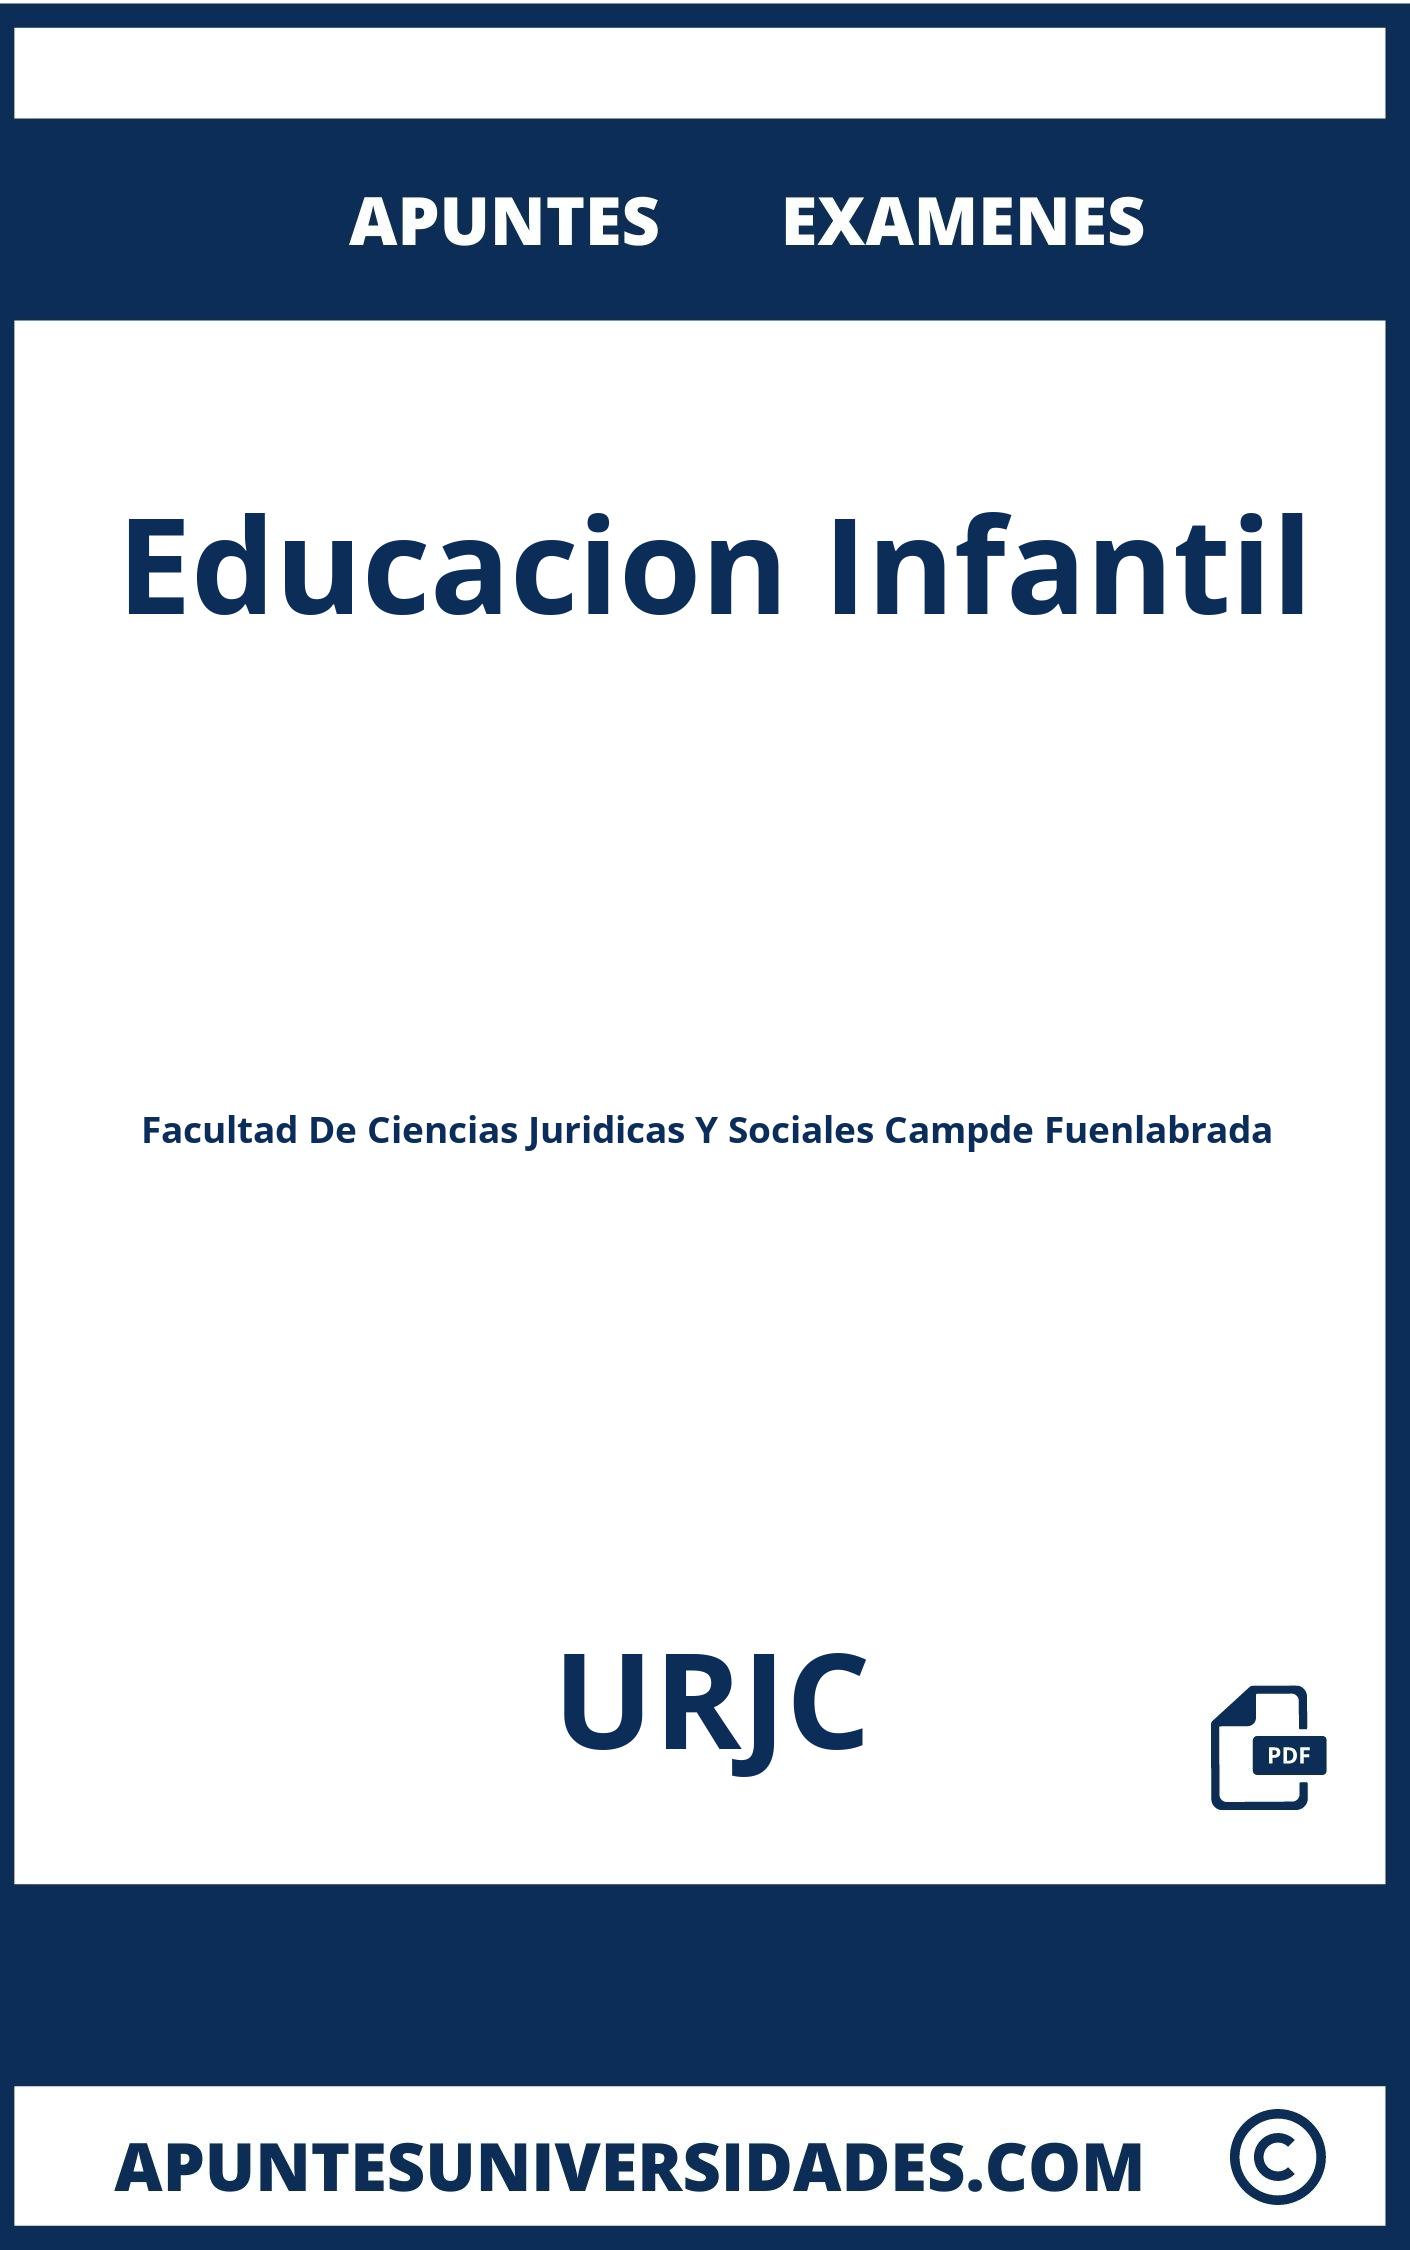 Apuntes y Examenes Educacion Infantil URJC